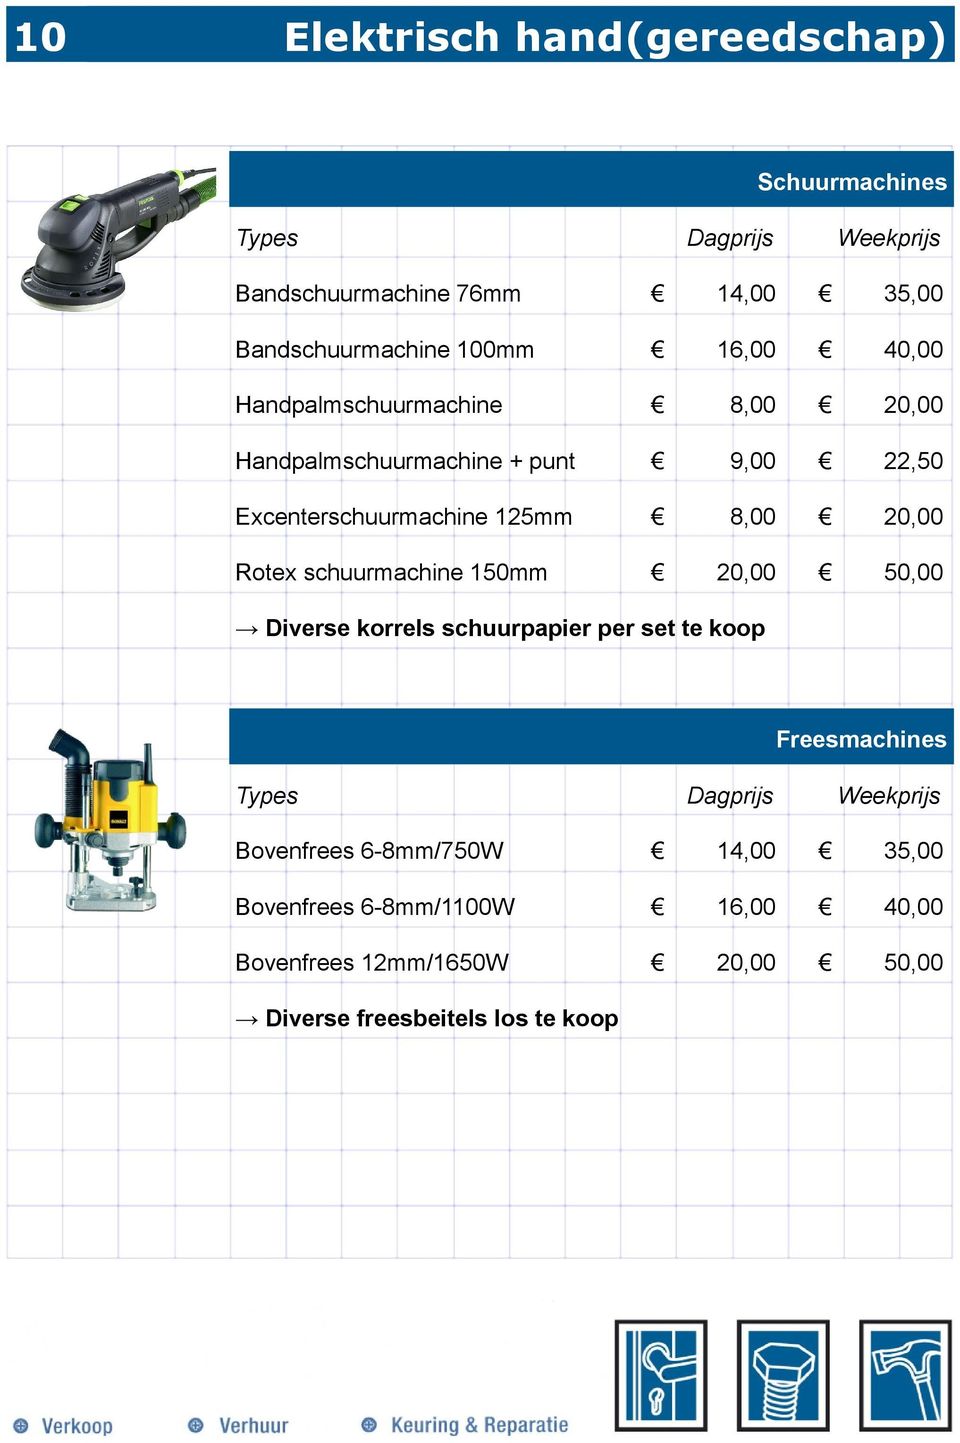 0,00 Rotex schuurmachine 50mm 0,00 50,00 Diverse korrels schuurpapier per set te koop Freesmachines